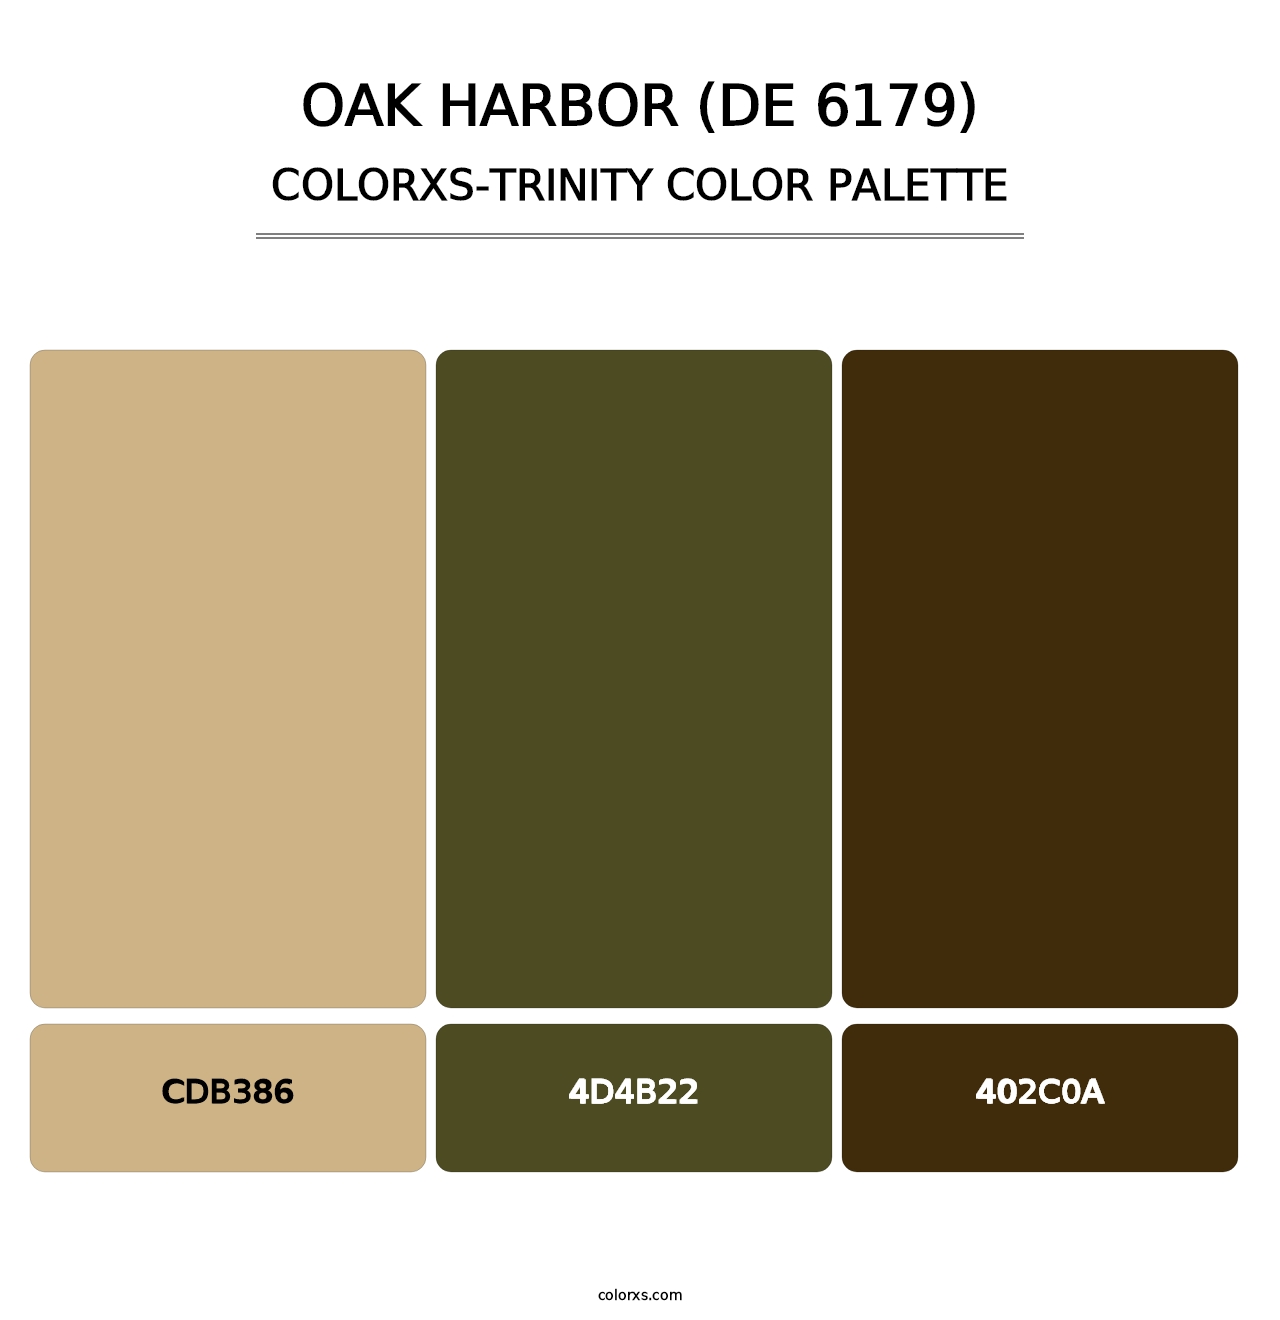 Oak Harbor (DE 6179) - Colorxs Trinity Palette